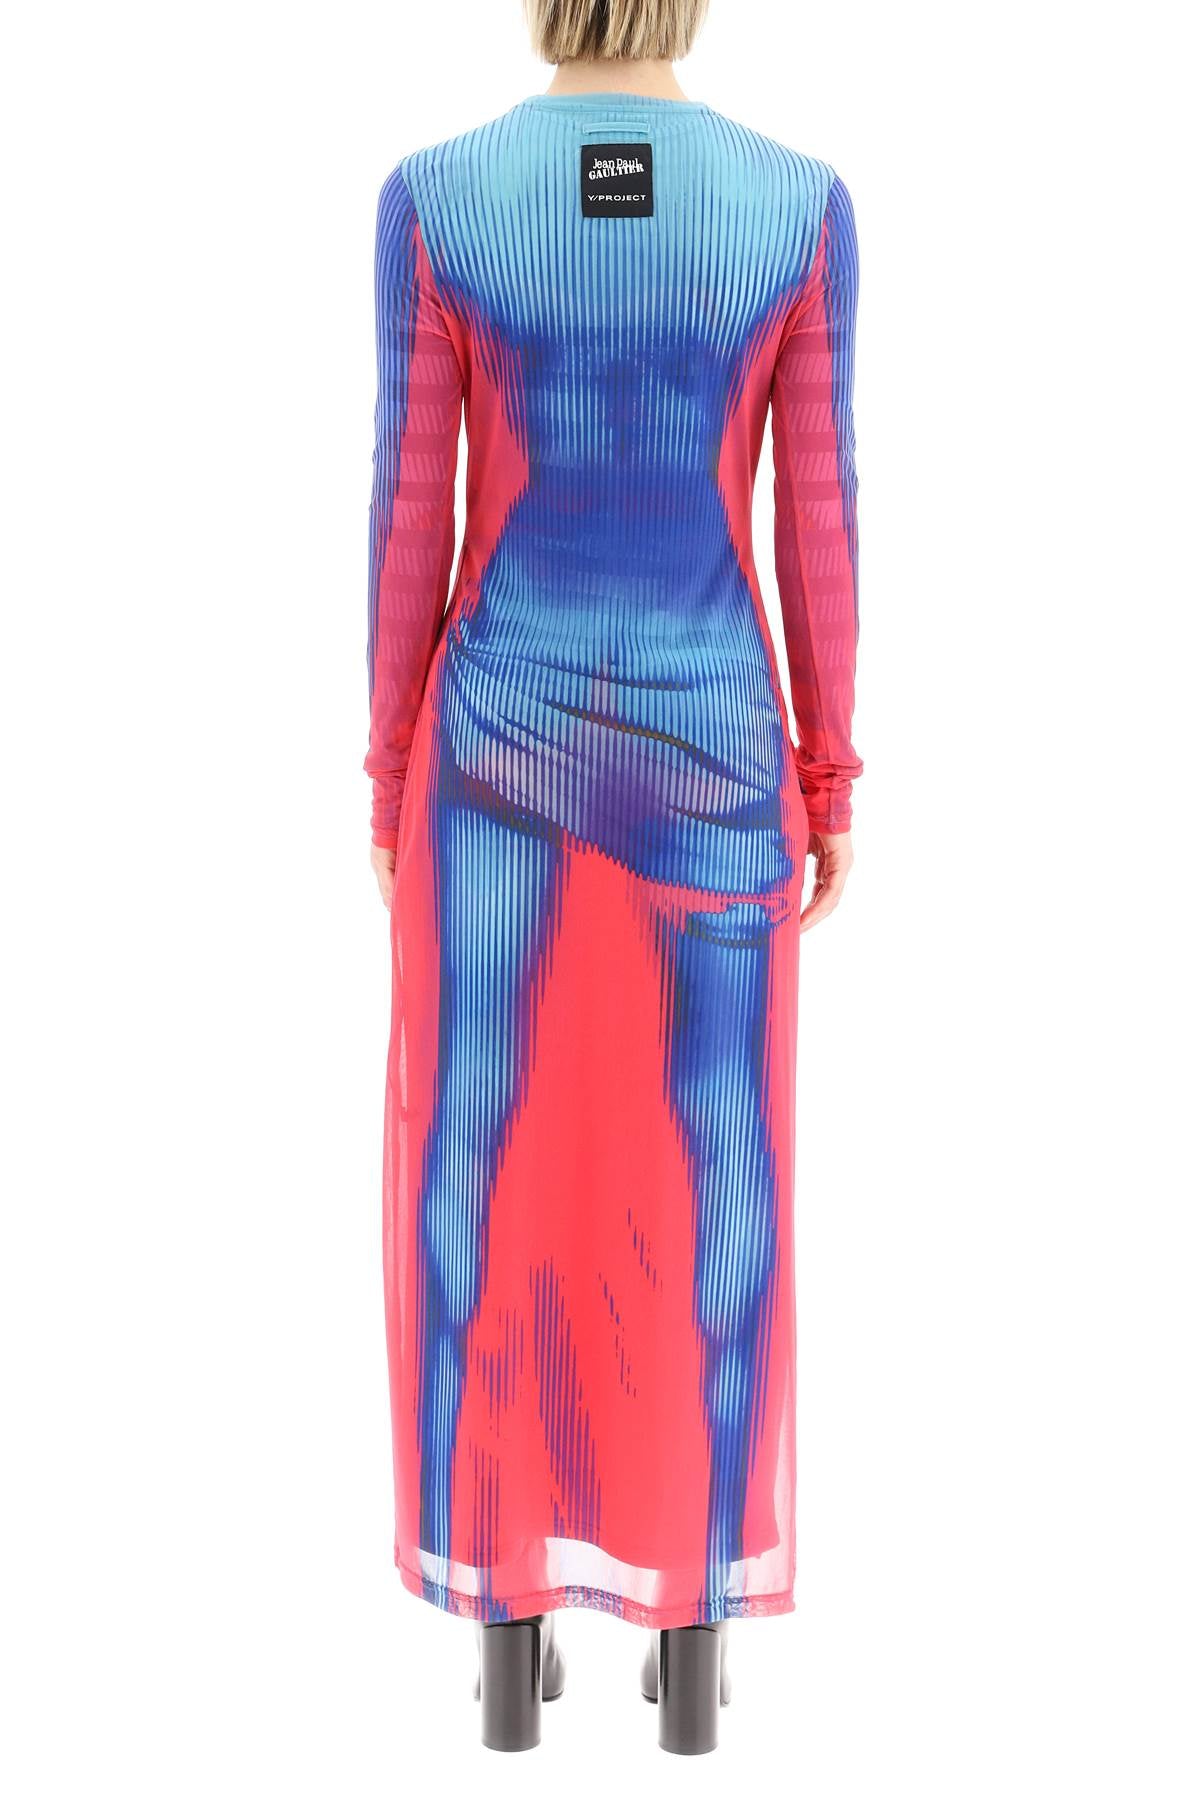 Y Project Jean Paul Gaultier Body Morph Dress Women